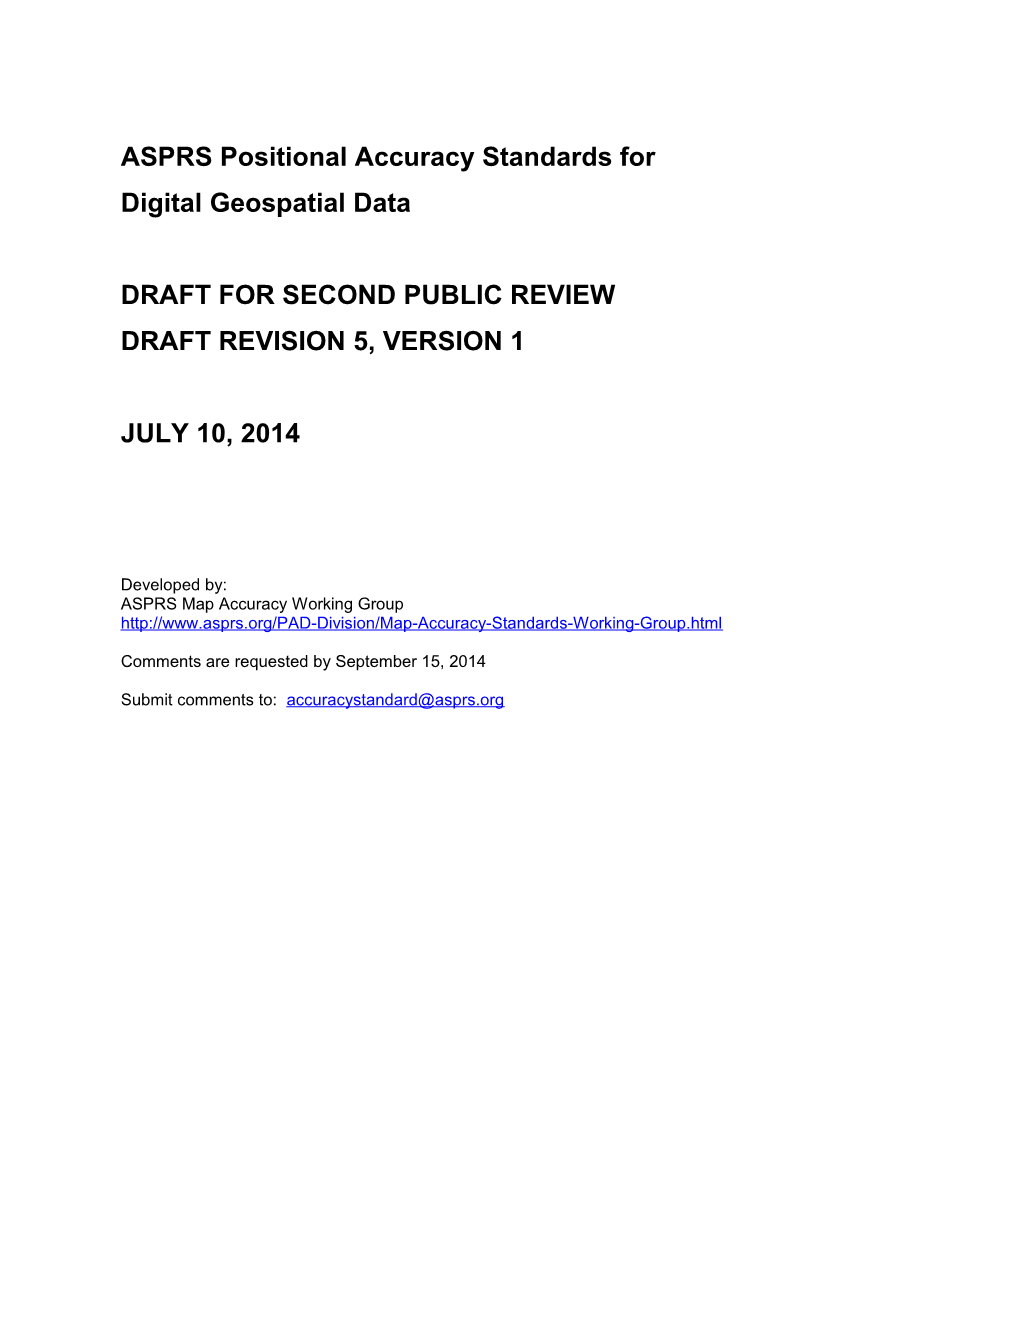 ASPRS Accuracy Standards For Digital Geospatial Data